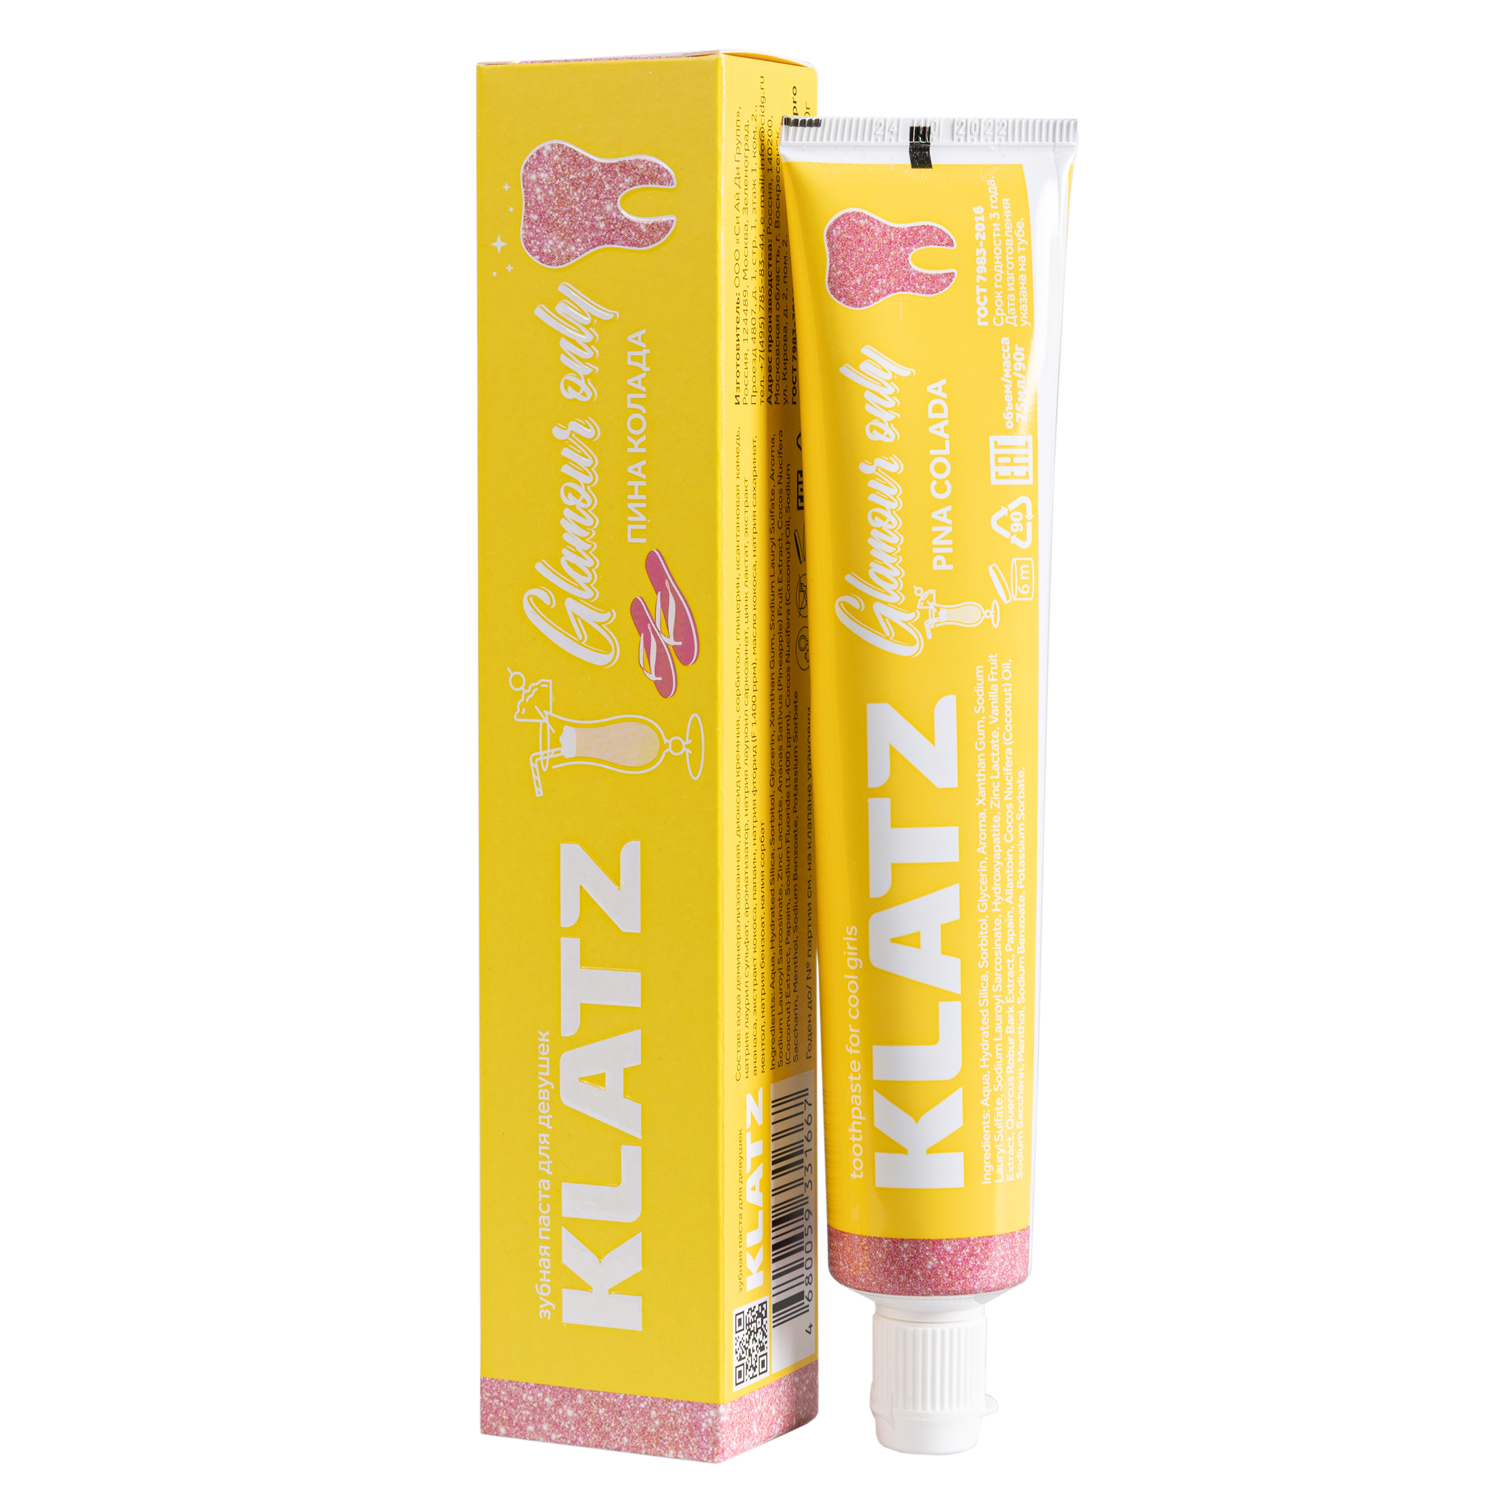 Klatz Зубная паста для девушек Пина колада, 75 мл (Klatz, Glamour Only) набор для чистки зубов klatz glamour only 75 мл 3 шт